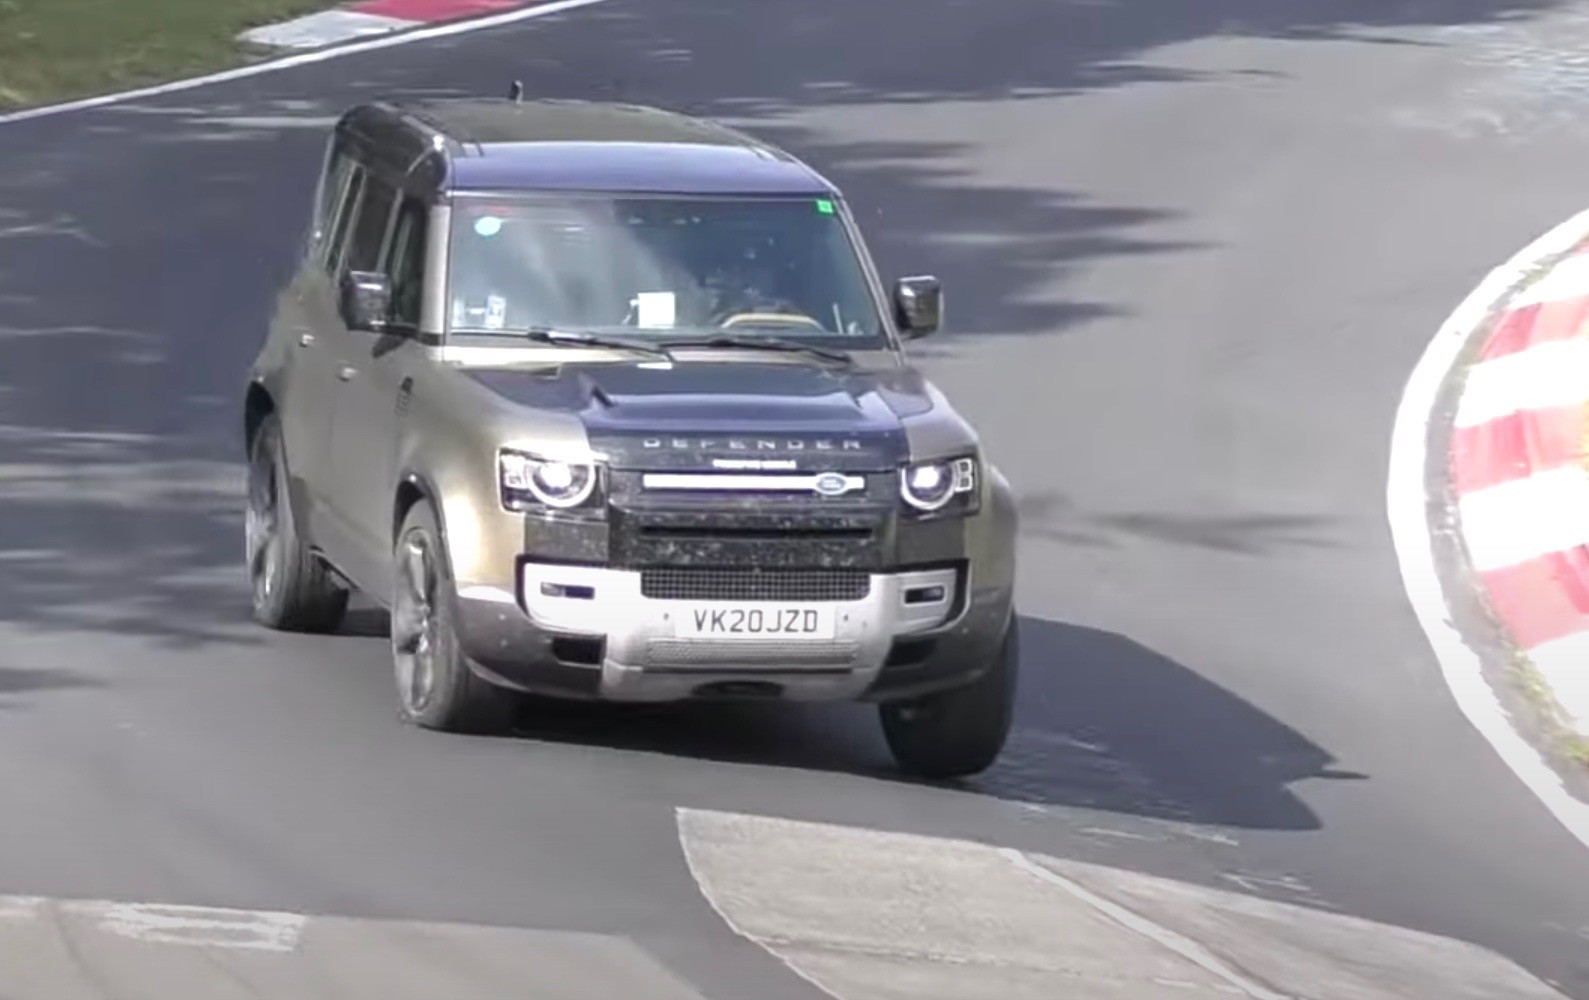 V8 2021 Land Rover Defender test mule spotted (video)